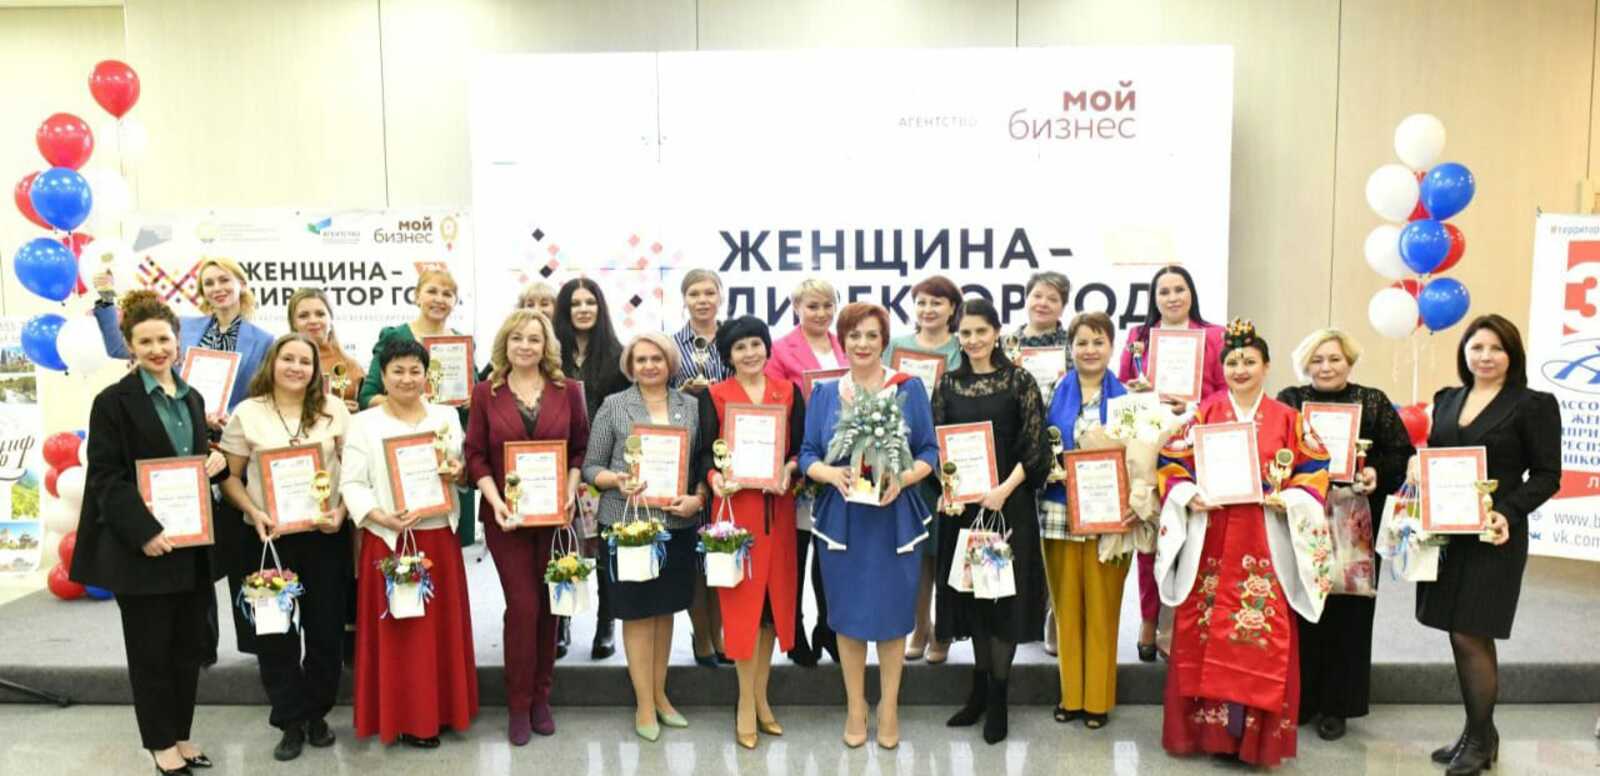 В республиканском этапе конкурса «Женщина – директор года» победили три представительницы Октябрьского